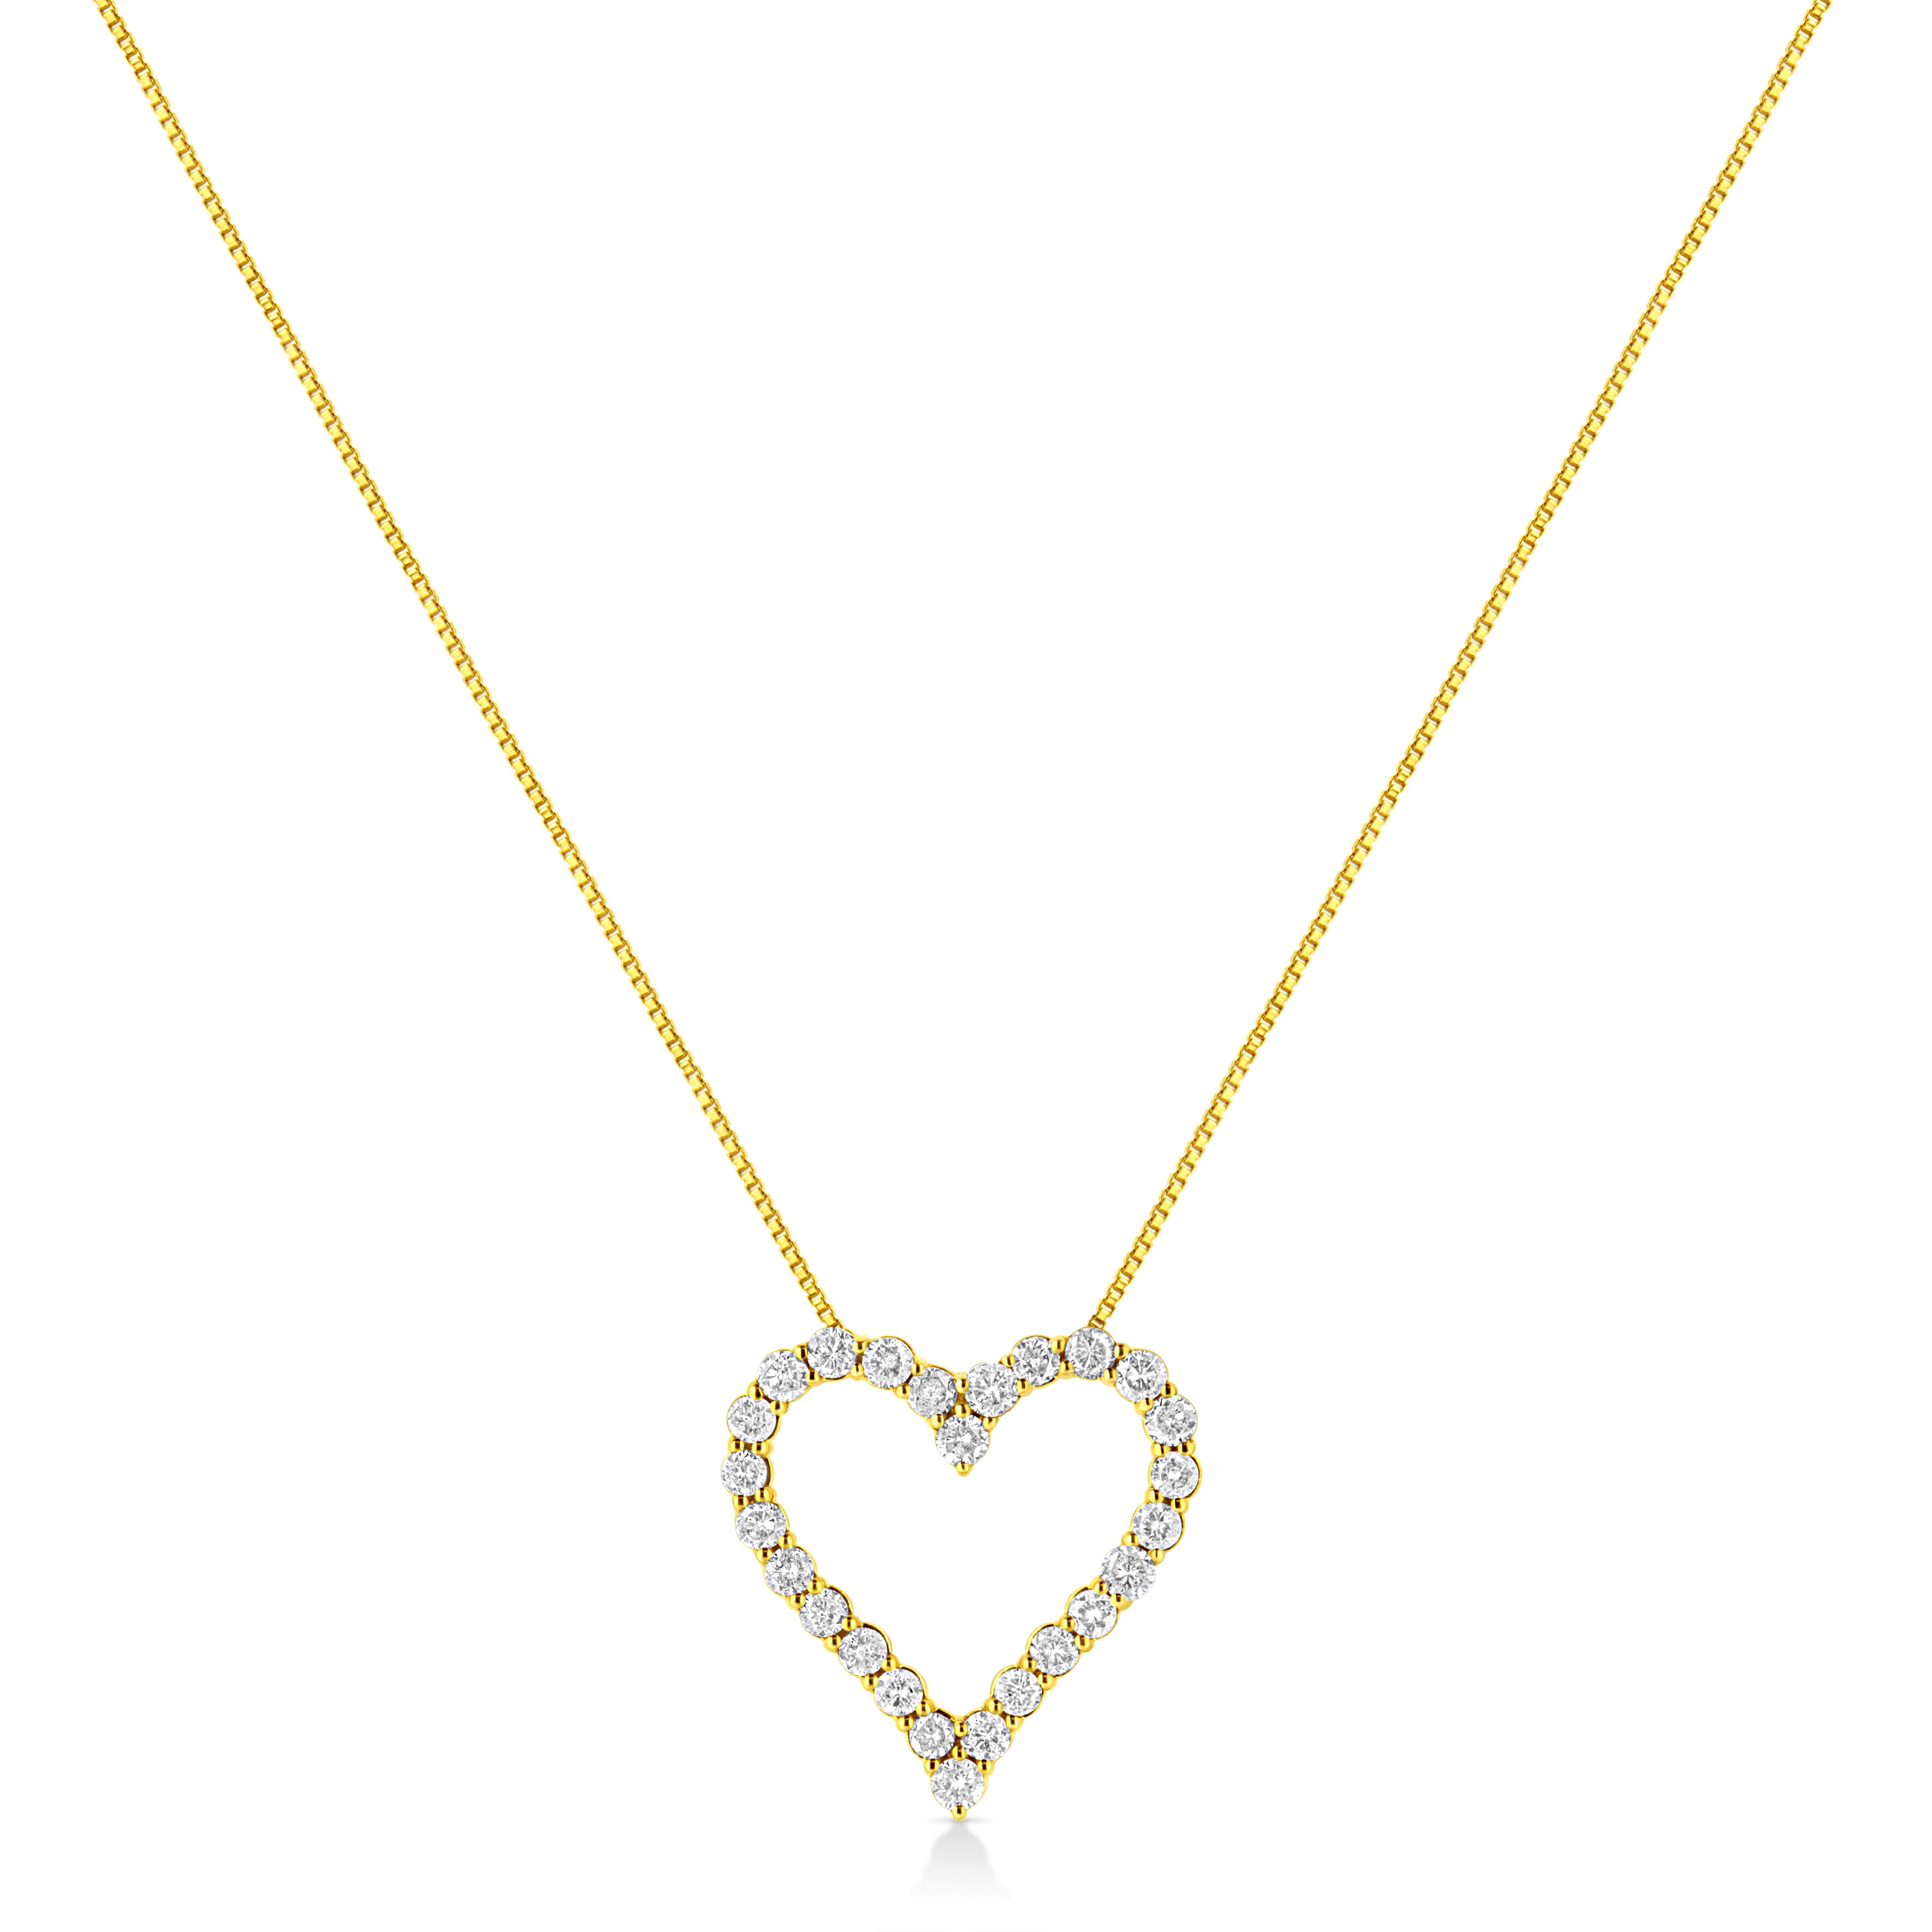 Feiern Sie jemanden, den Sie lieben, mit dieser atemberaubenden Diamant-Halskette mit offenem Herz. Diese Diamant-Halskette zeigt ein klassisches offenes Herz aus runden Diamanten mit Brillantschliff in echtem 14-karätigem, gelbvergoldetem